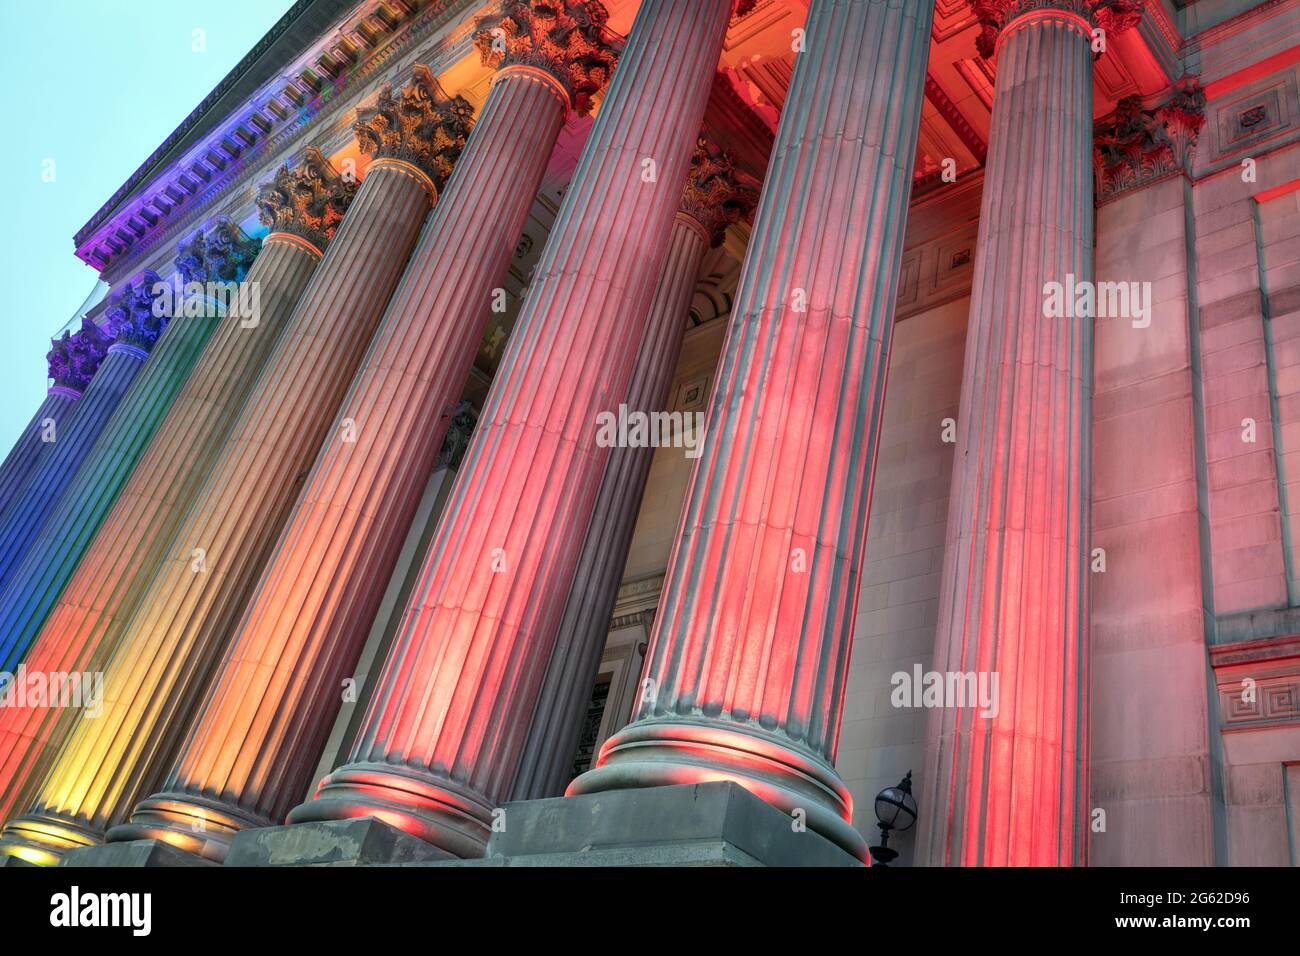 La facciata meridionale della St George's Hall, Liverpool, illuminata dai colori arcobaleno Foto Stock